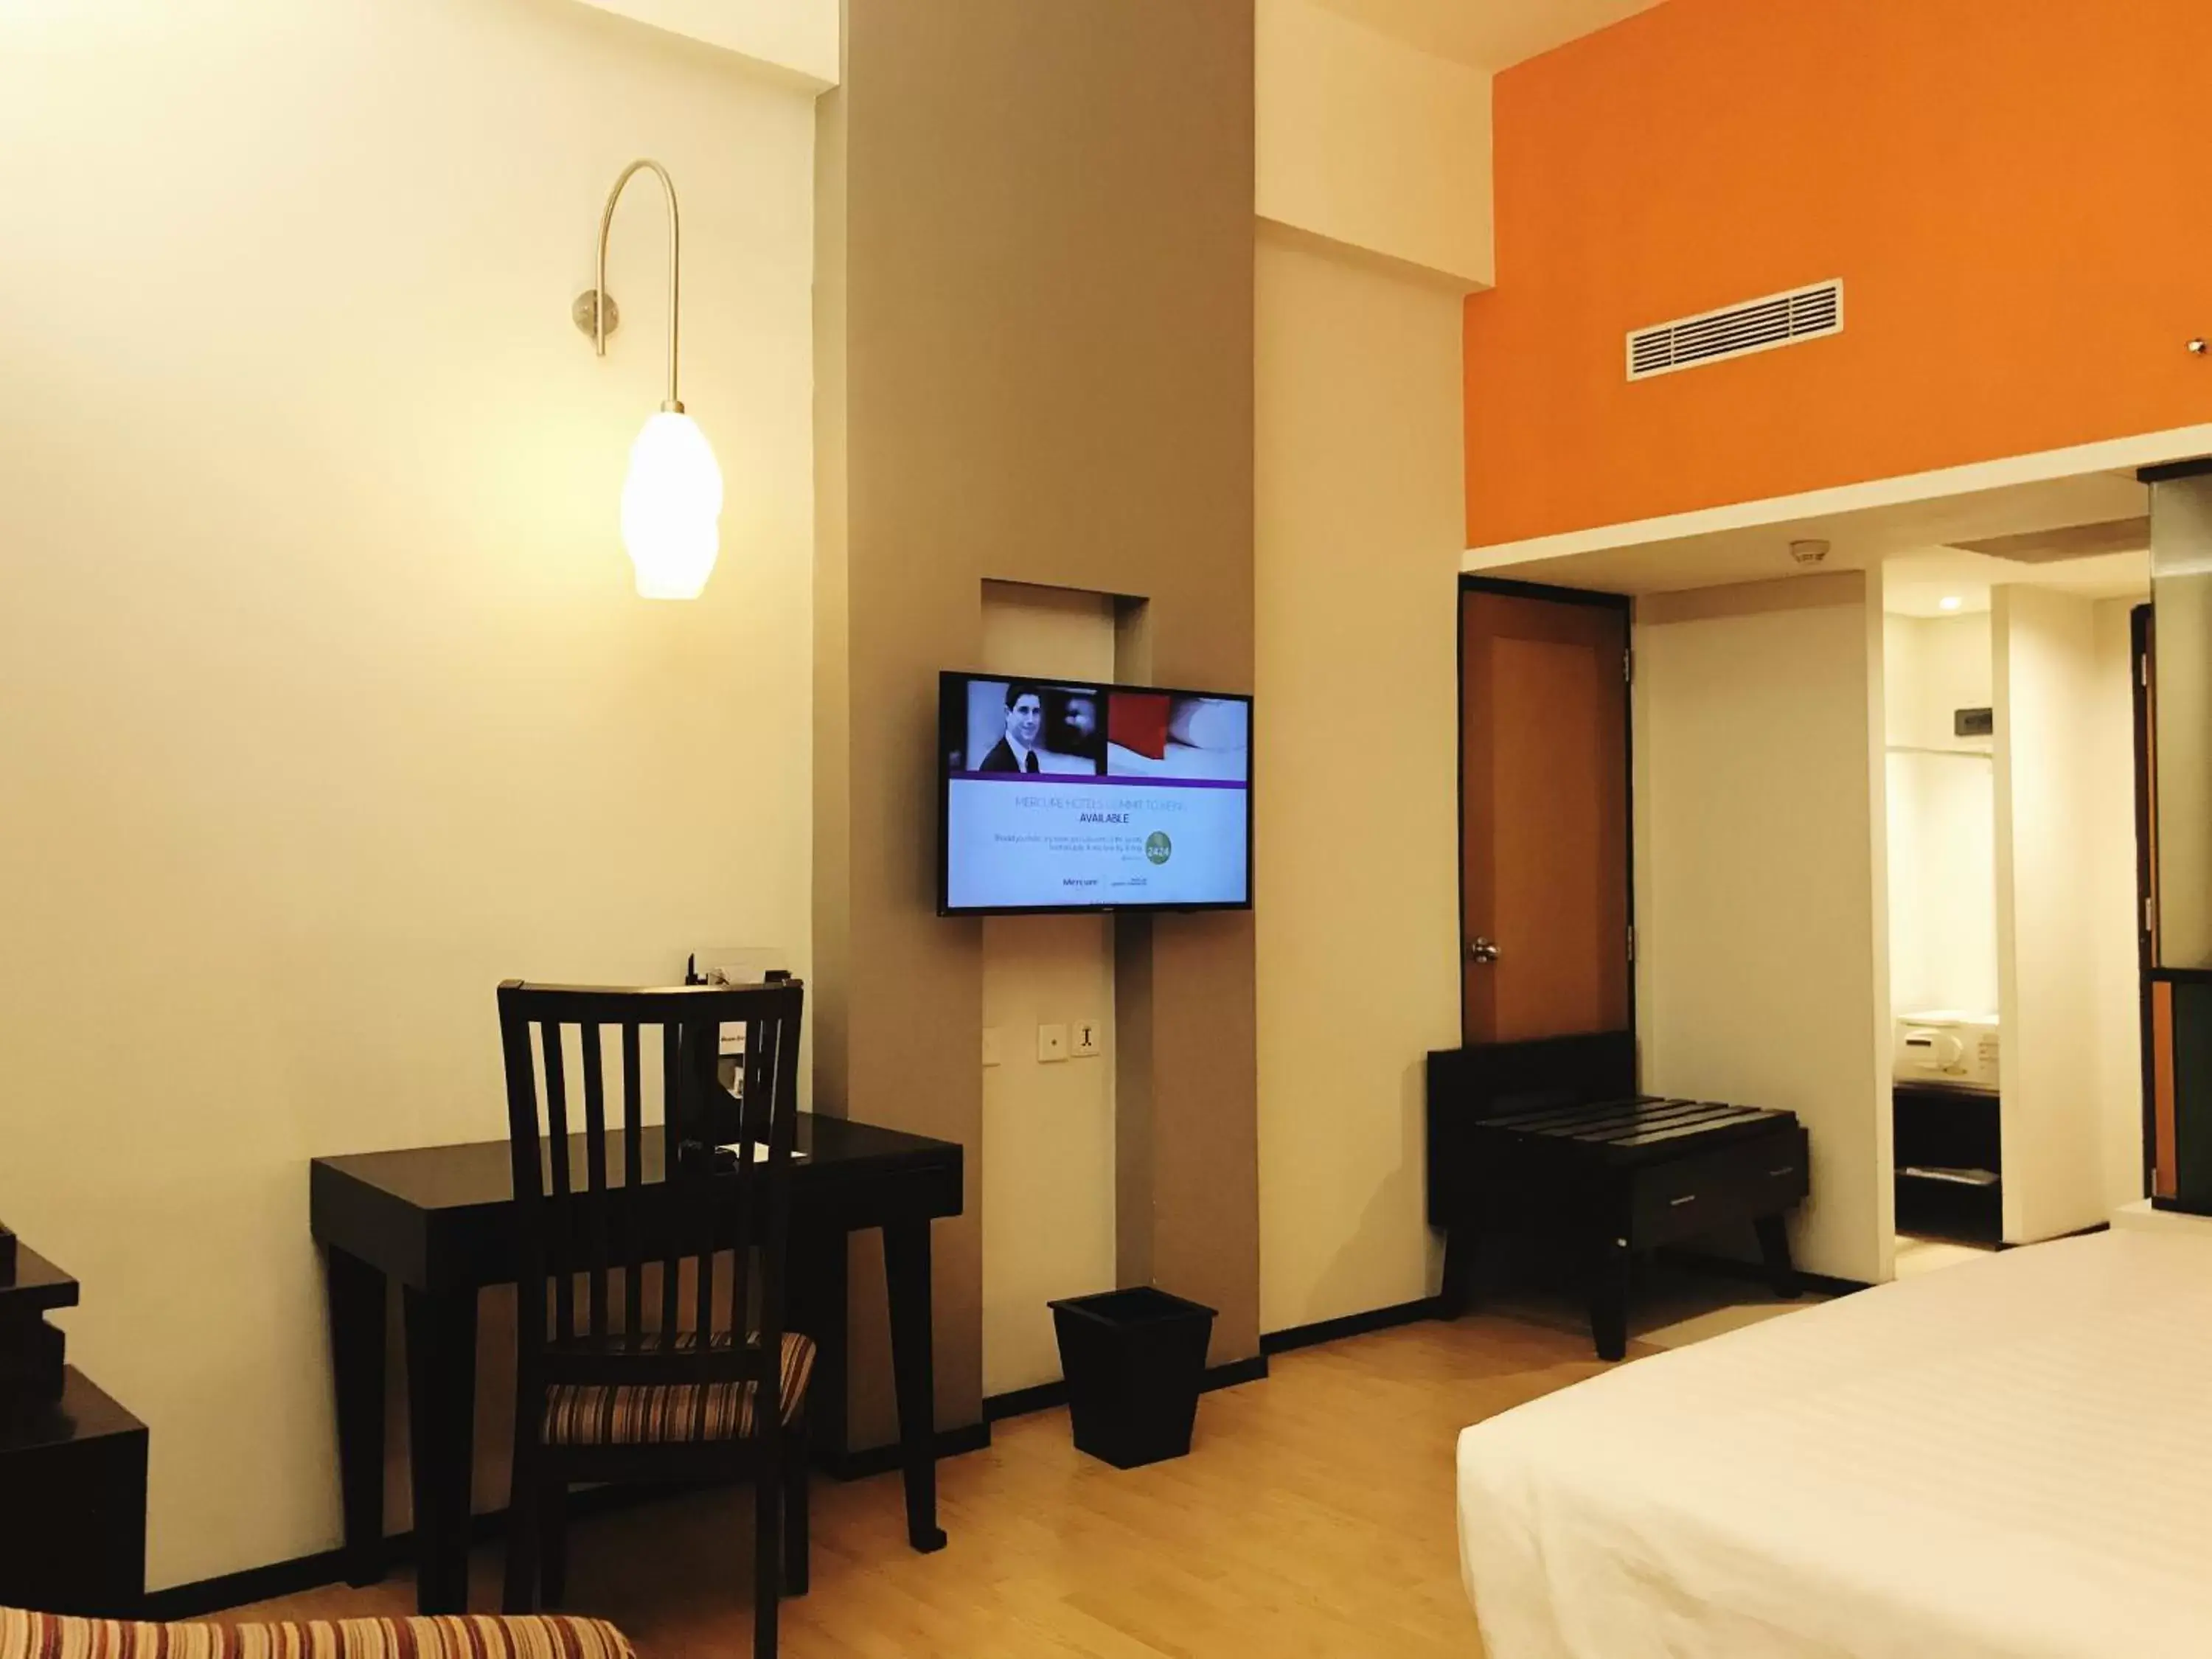 Bedroom, TV/Entertainment Center in Mercure Surabaya